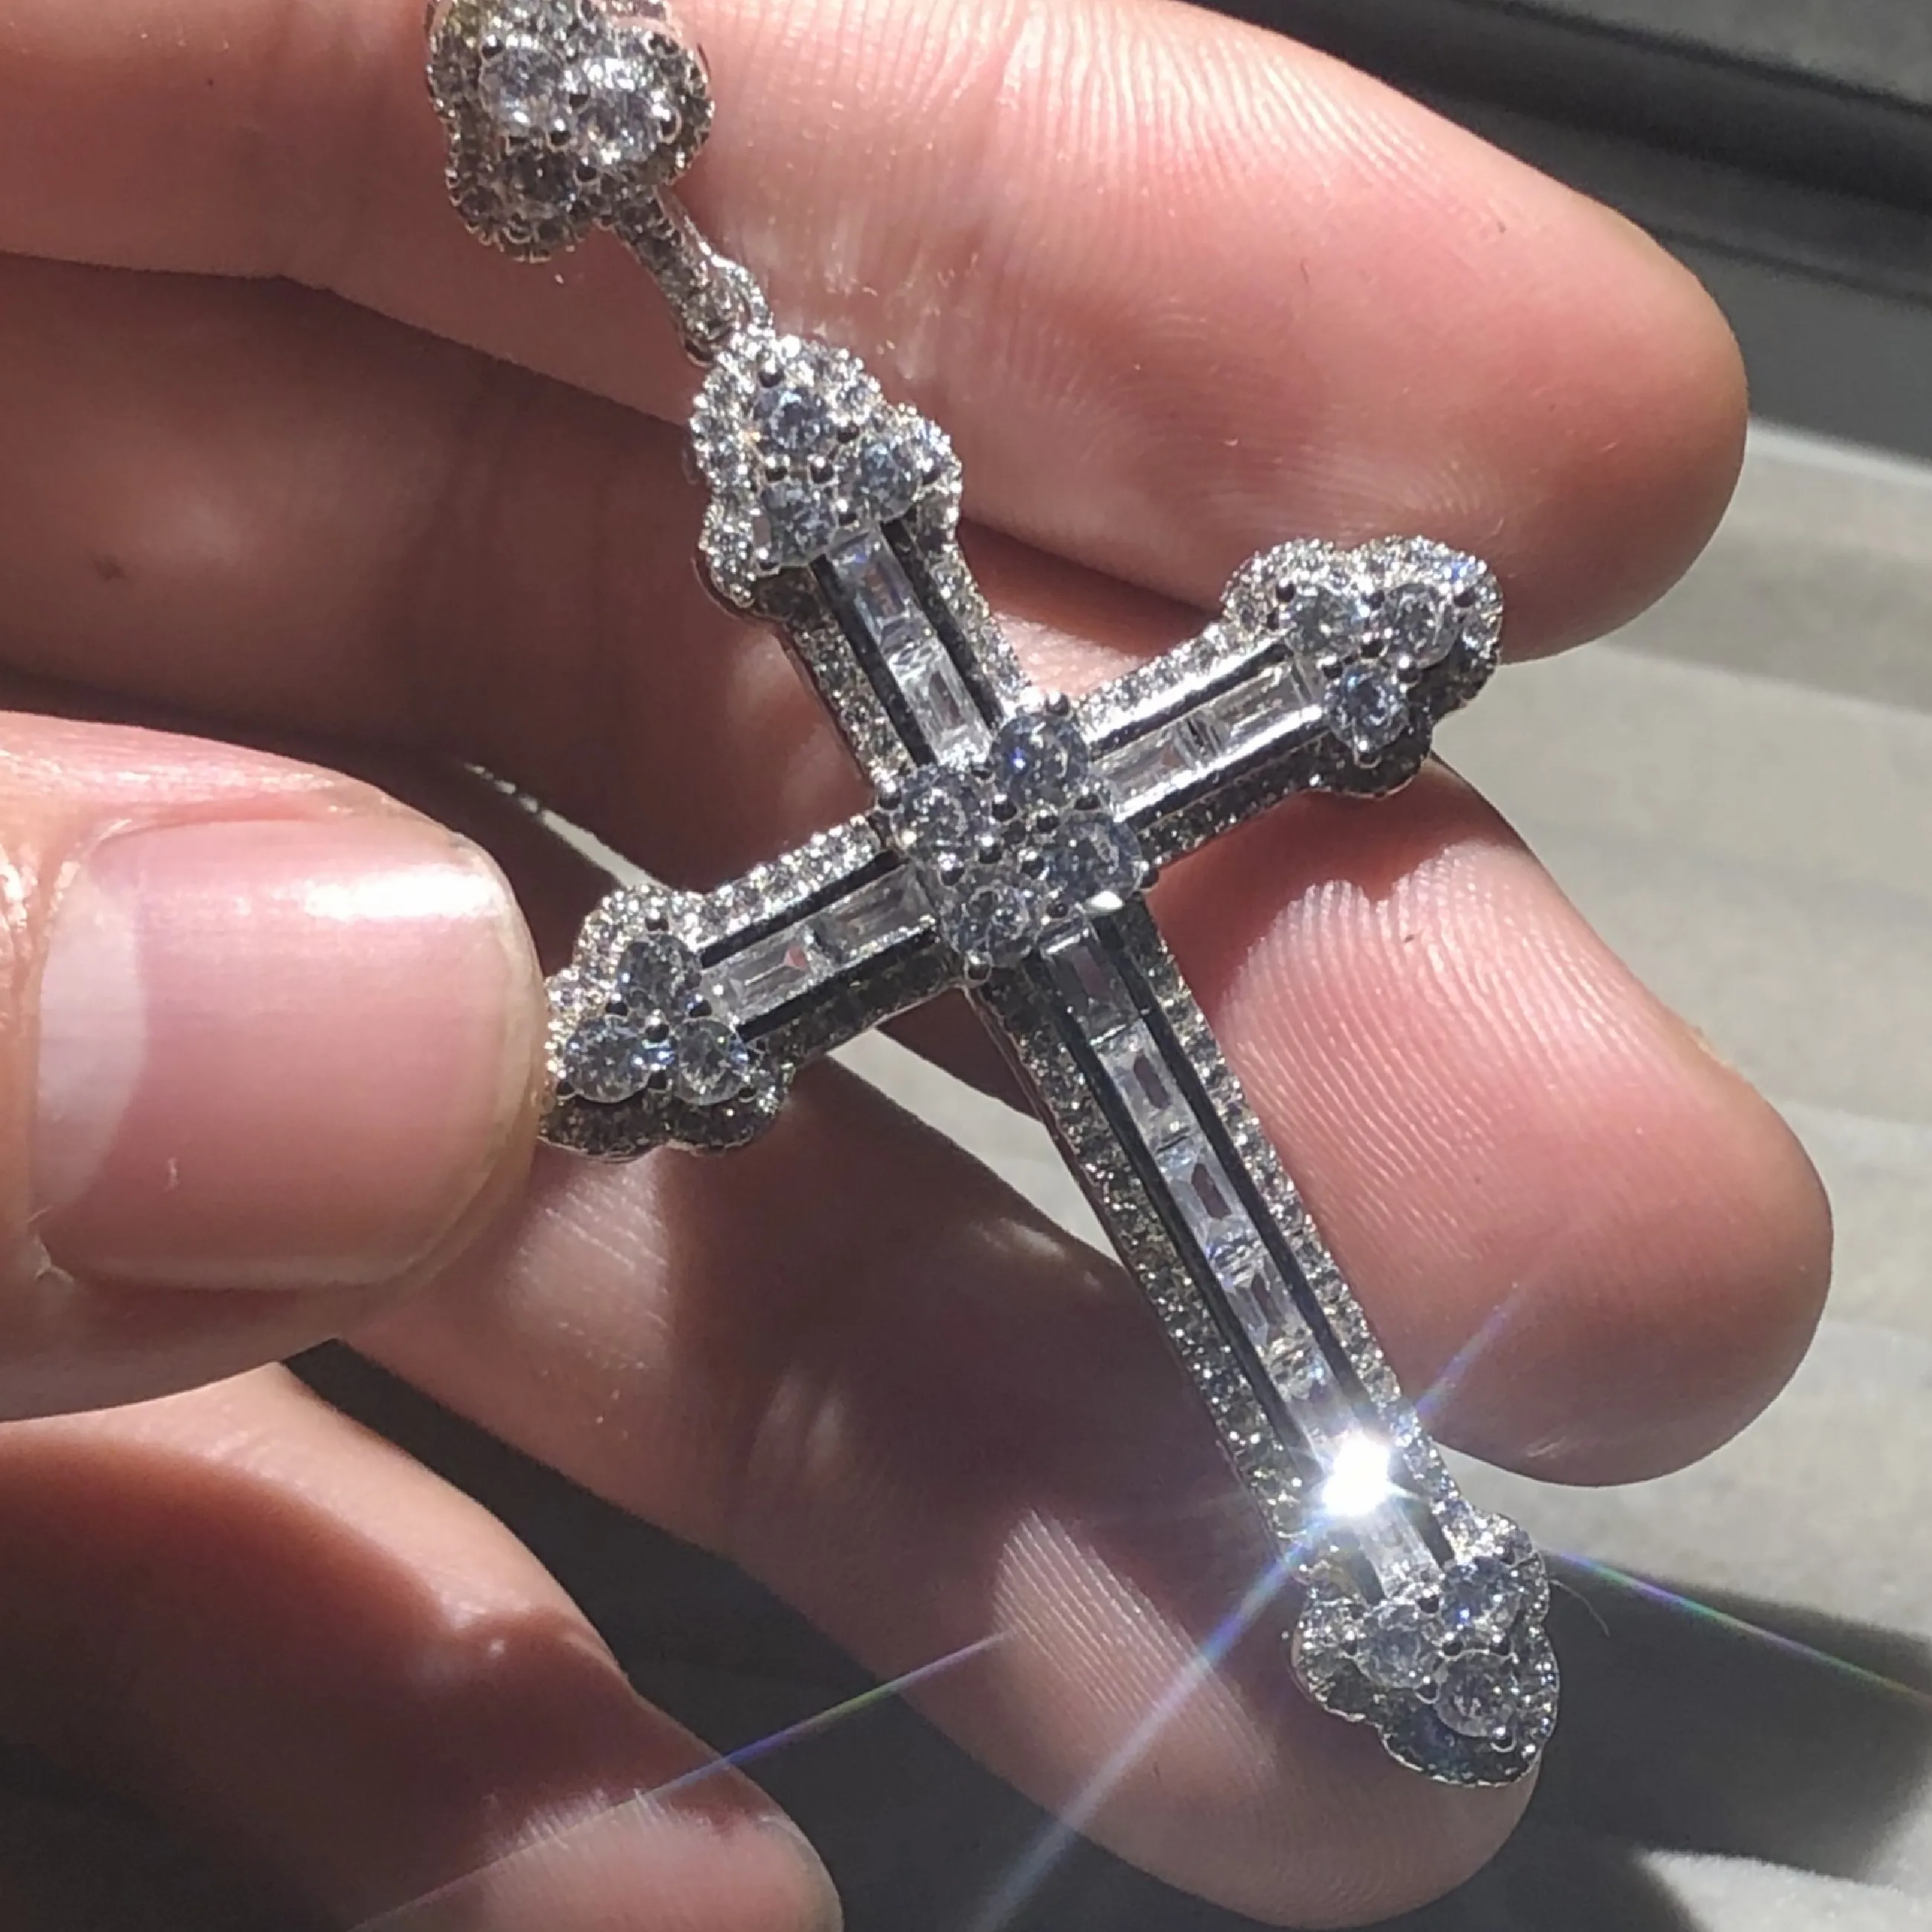 Moda argento sterling 925 fiore squisita Bibbia Gesù croce collana pendente per le donne crocifisso fascino pavimenta gioielli con diamanti simulati